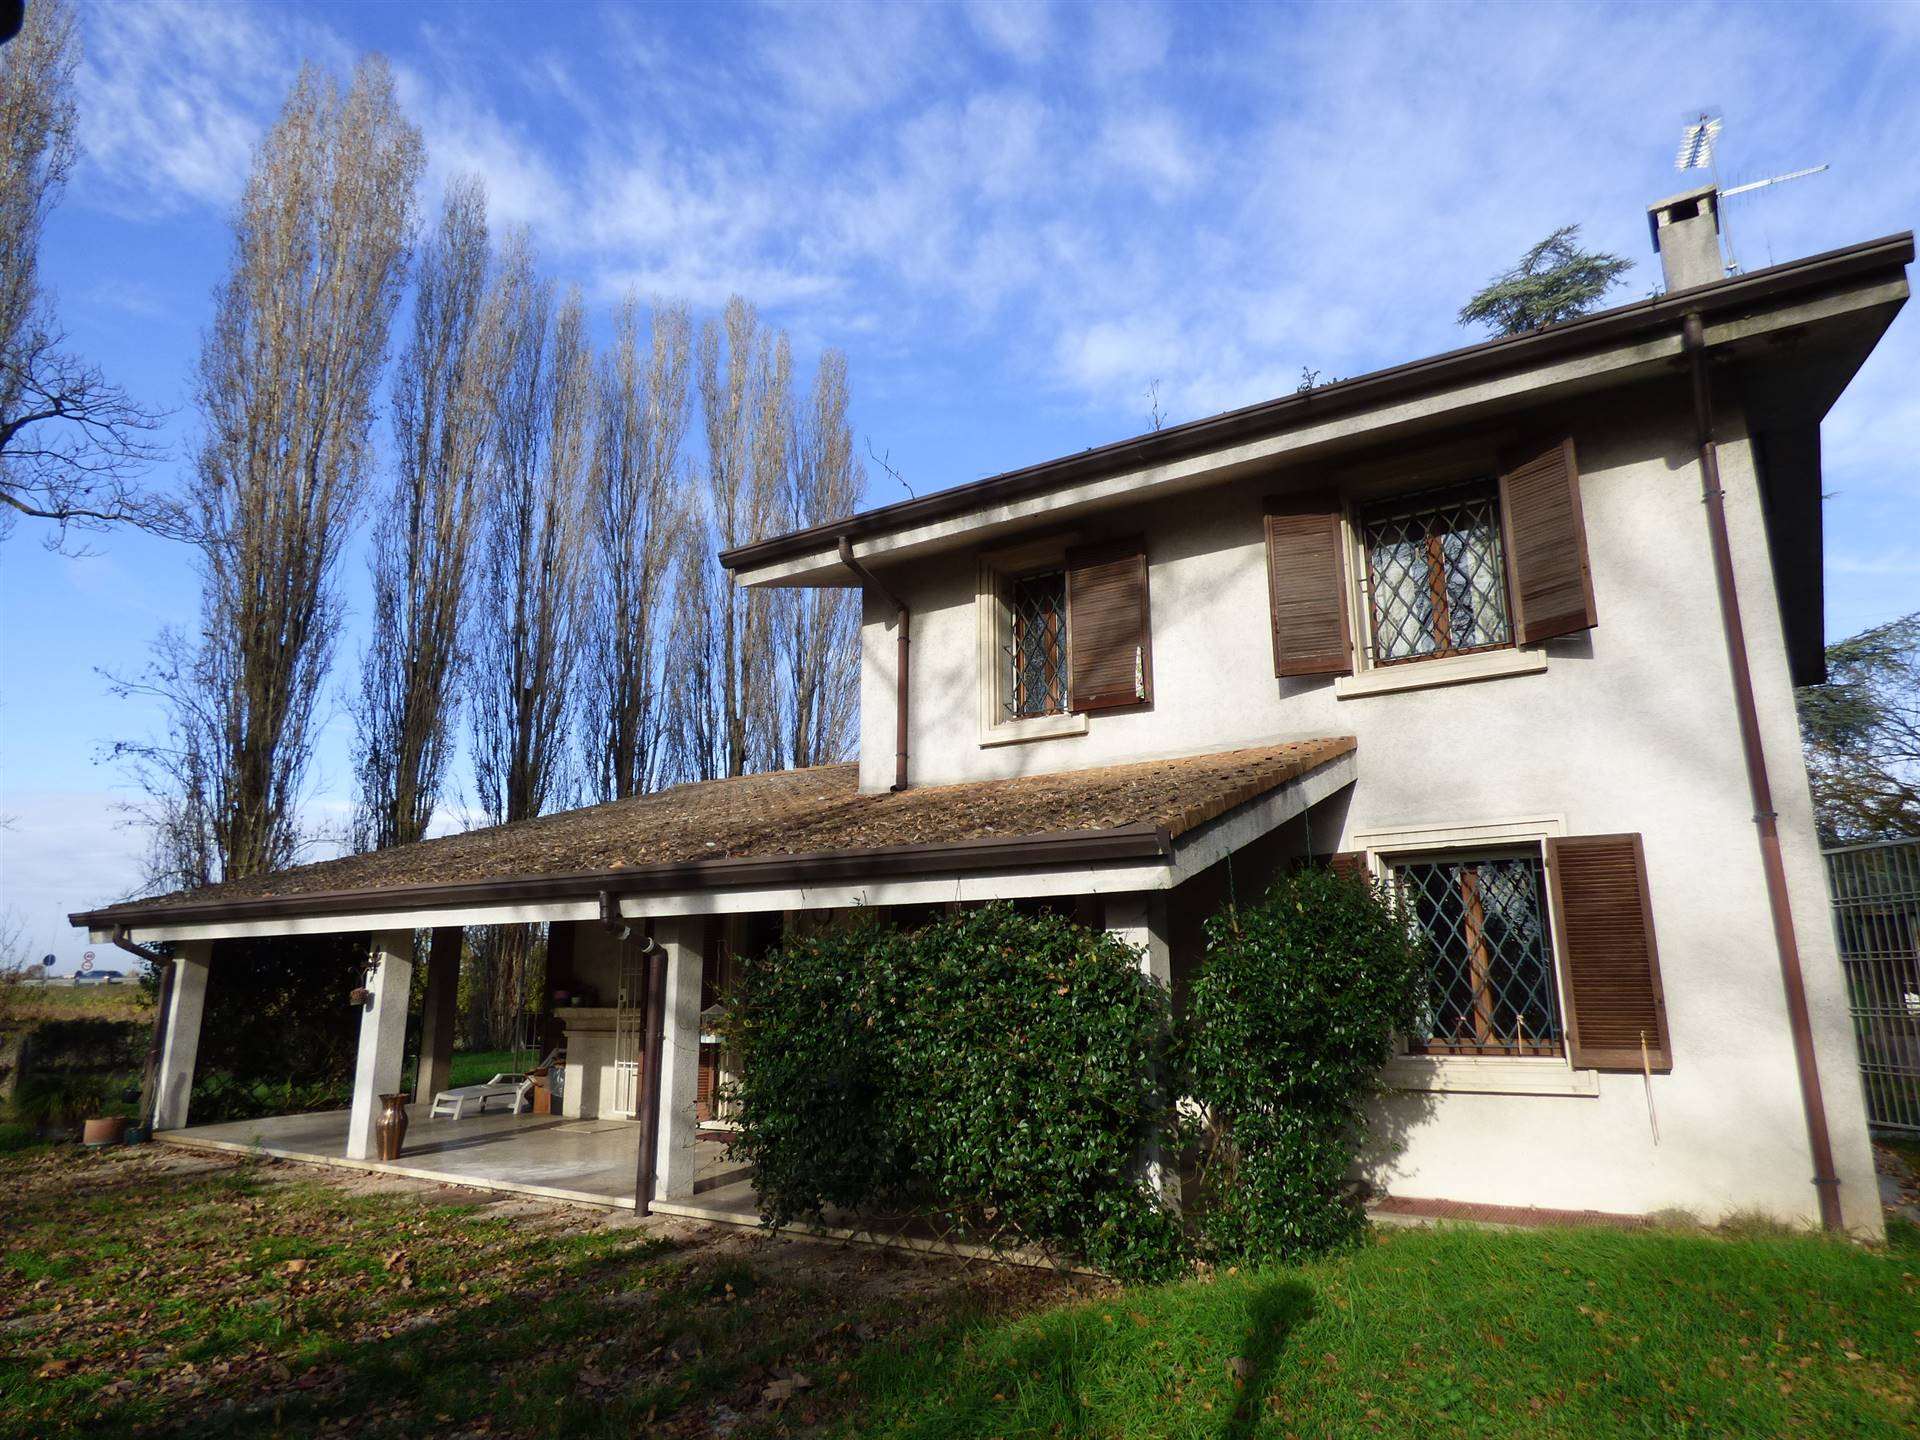 Villa in vendita a Legnago, 7 locali, zona Zona: Terranegra, prezzo € 298.000 | CambioCasa.it